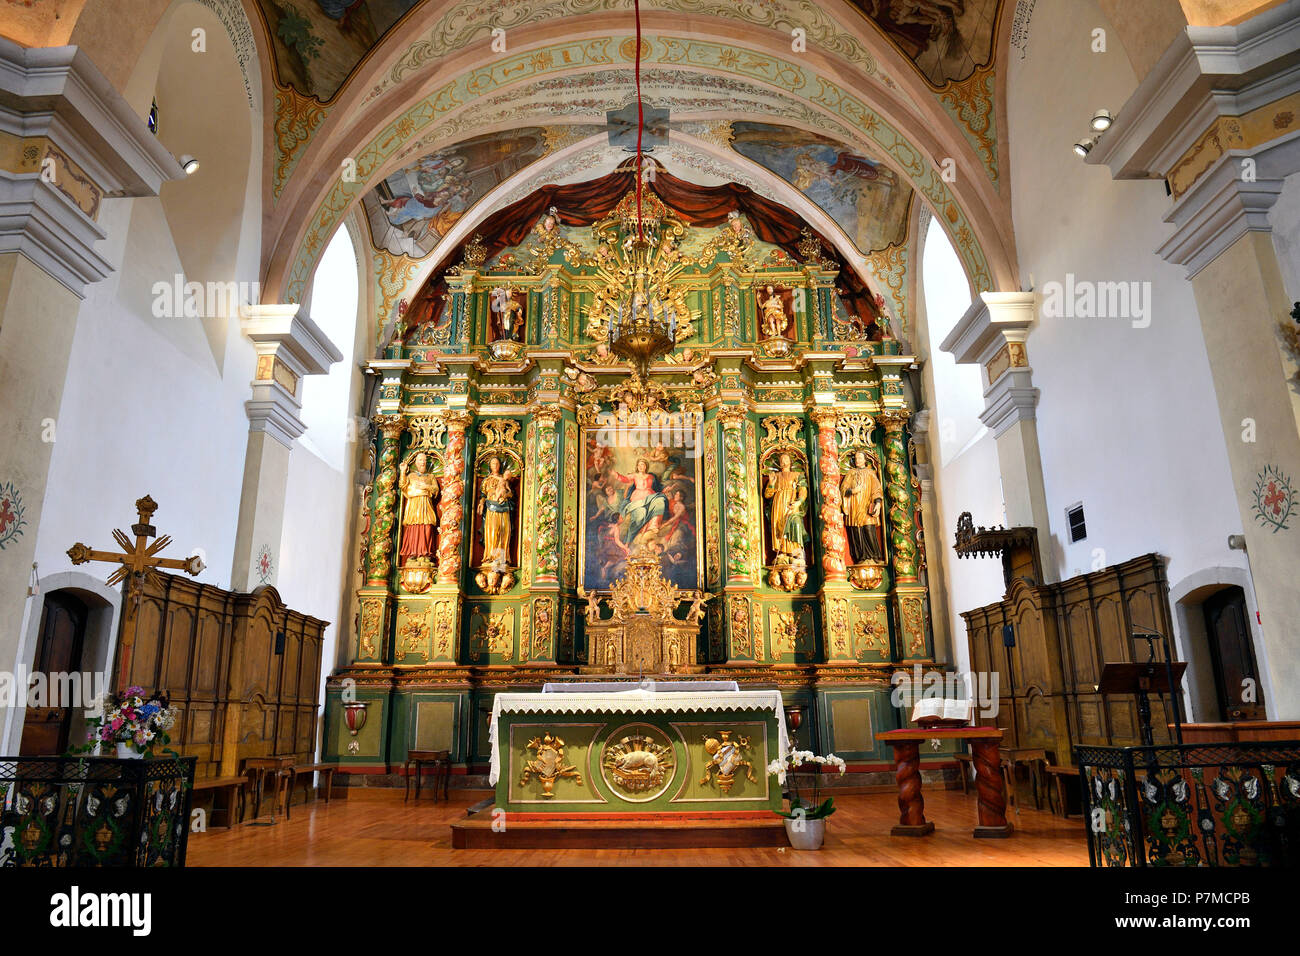 Francia, Haute Savoie, cordón, Les sentiers du Baroque, iglesia de Nuestra Señora de la Asunción, retablo barroco Foto de stock